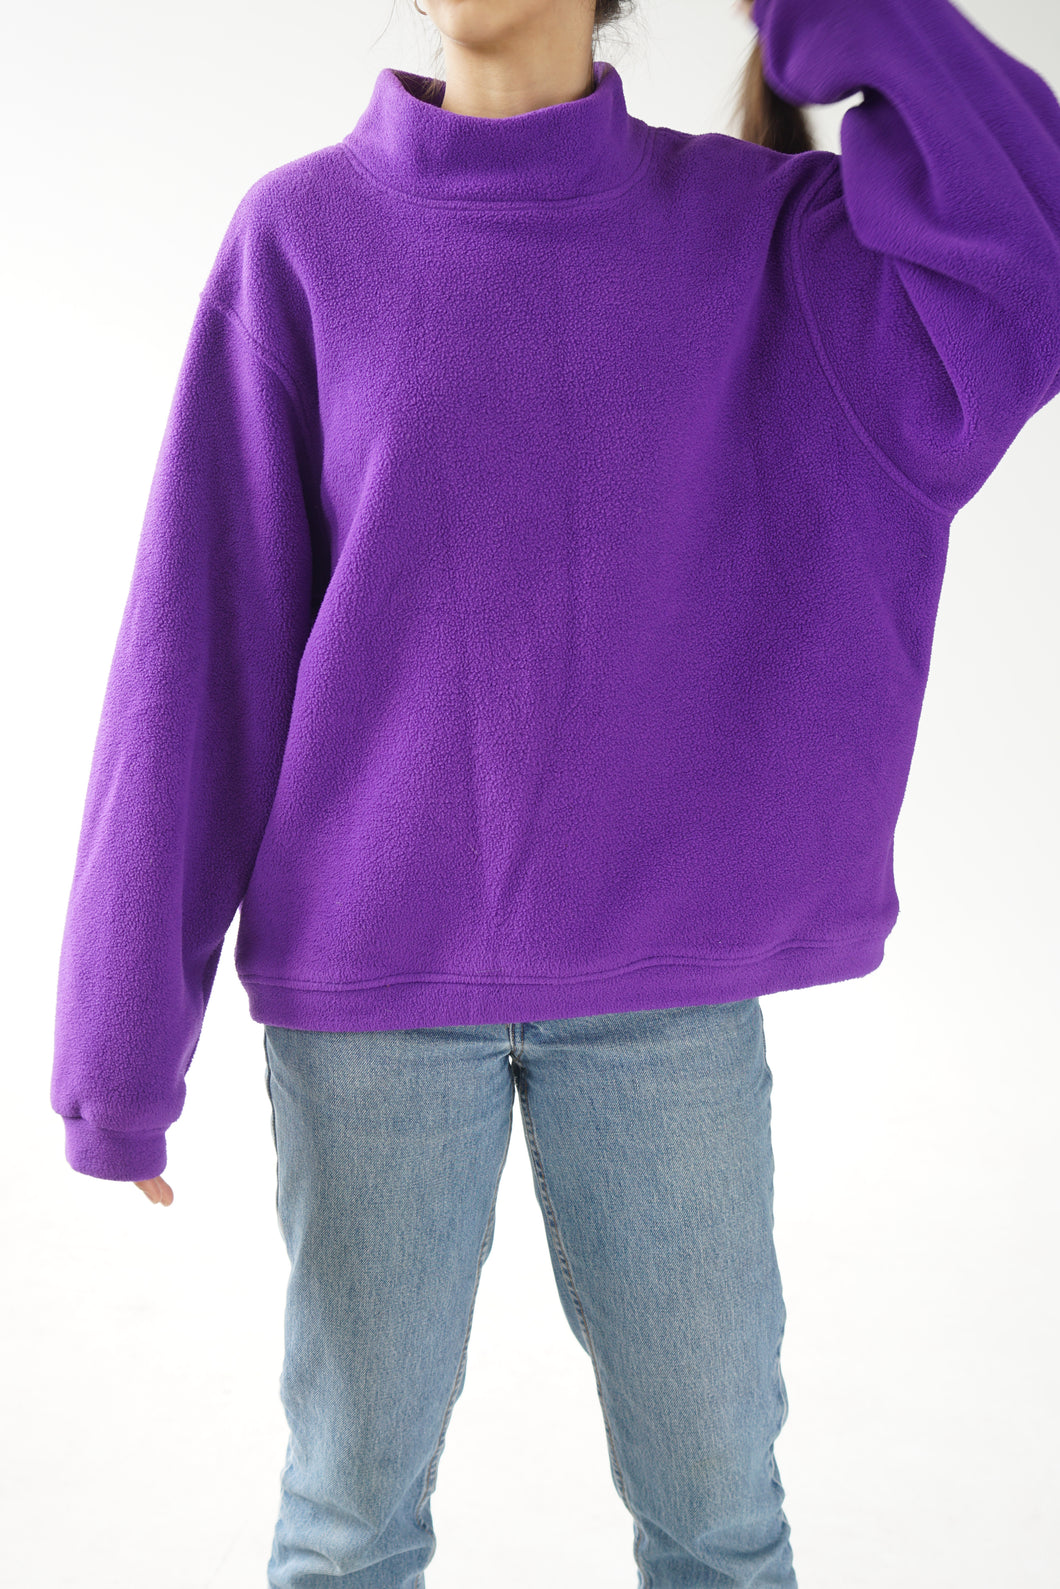 Vintage purple turtleneck fleece